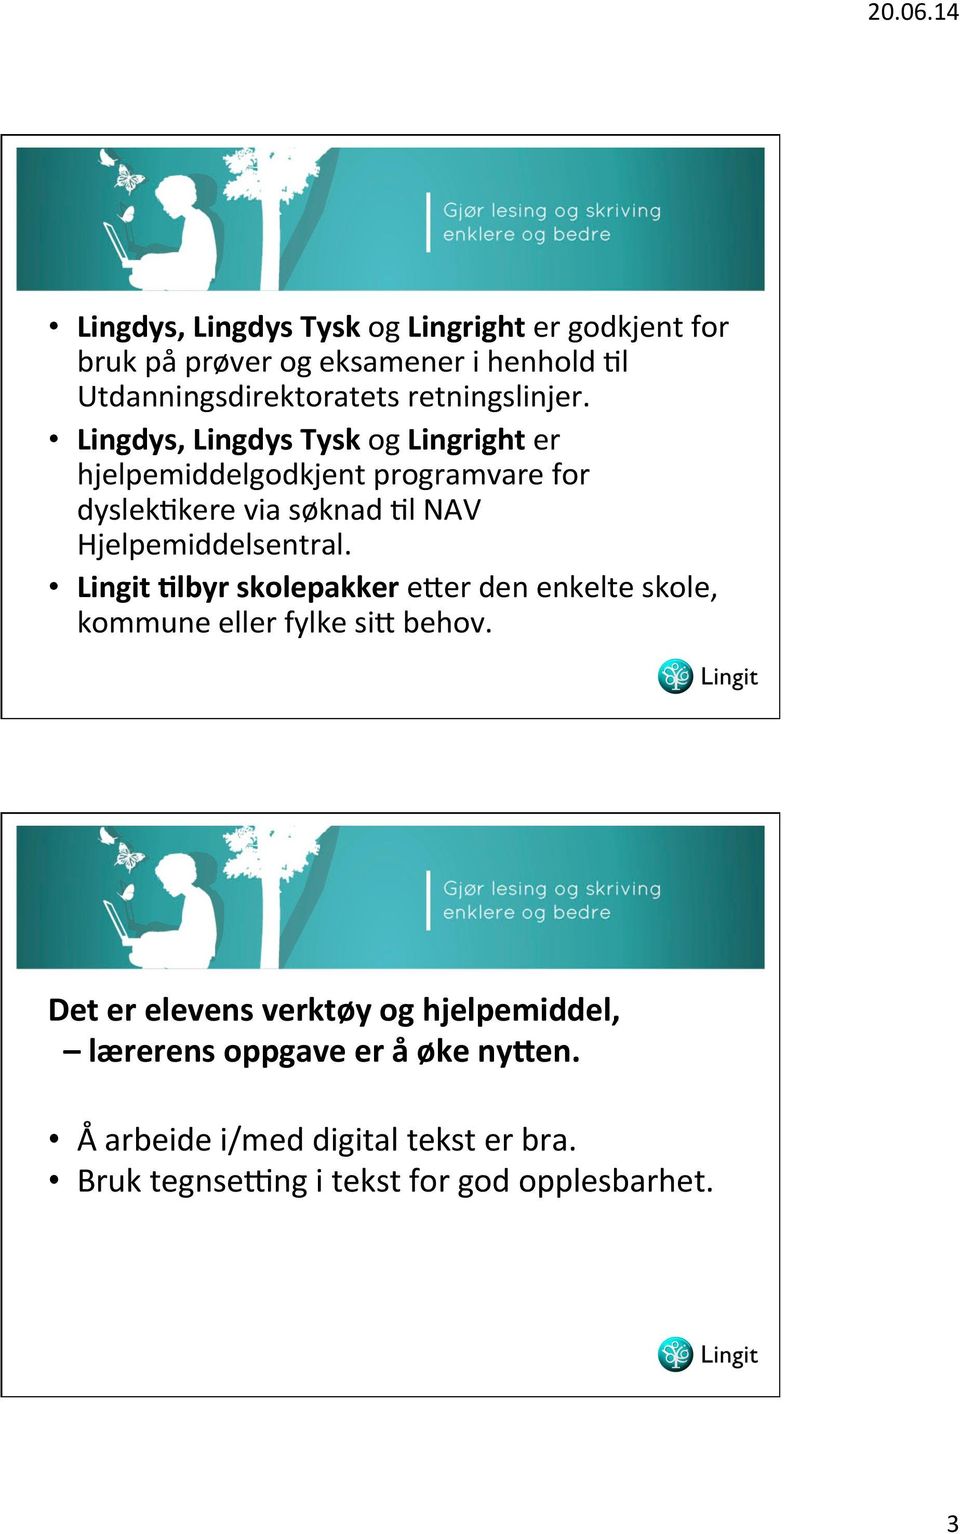 Lingdys, Lingdys Tysk og Lingright er hjelpemiddelgodkjent programvare for dyslekpkere via søknad Pl NAV